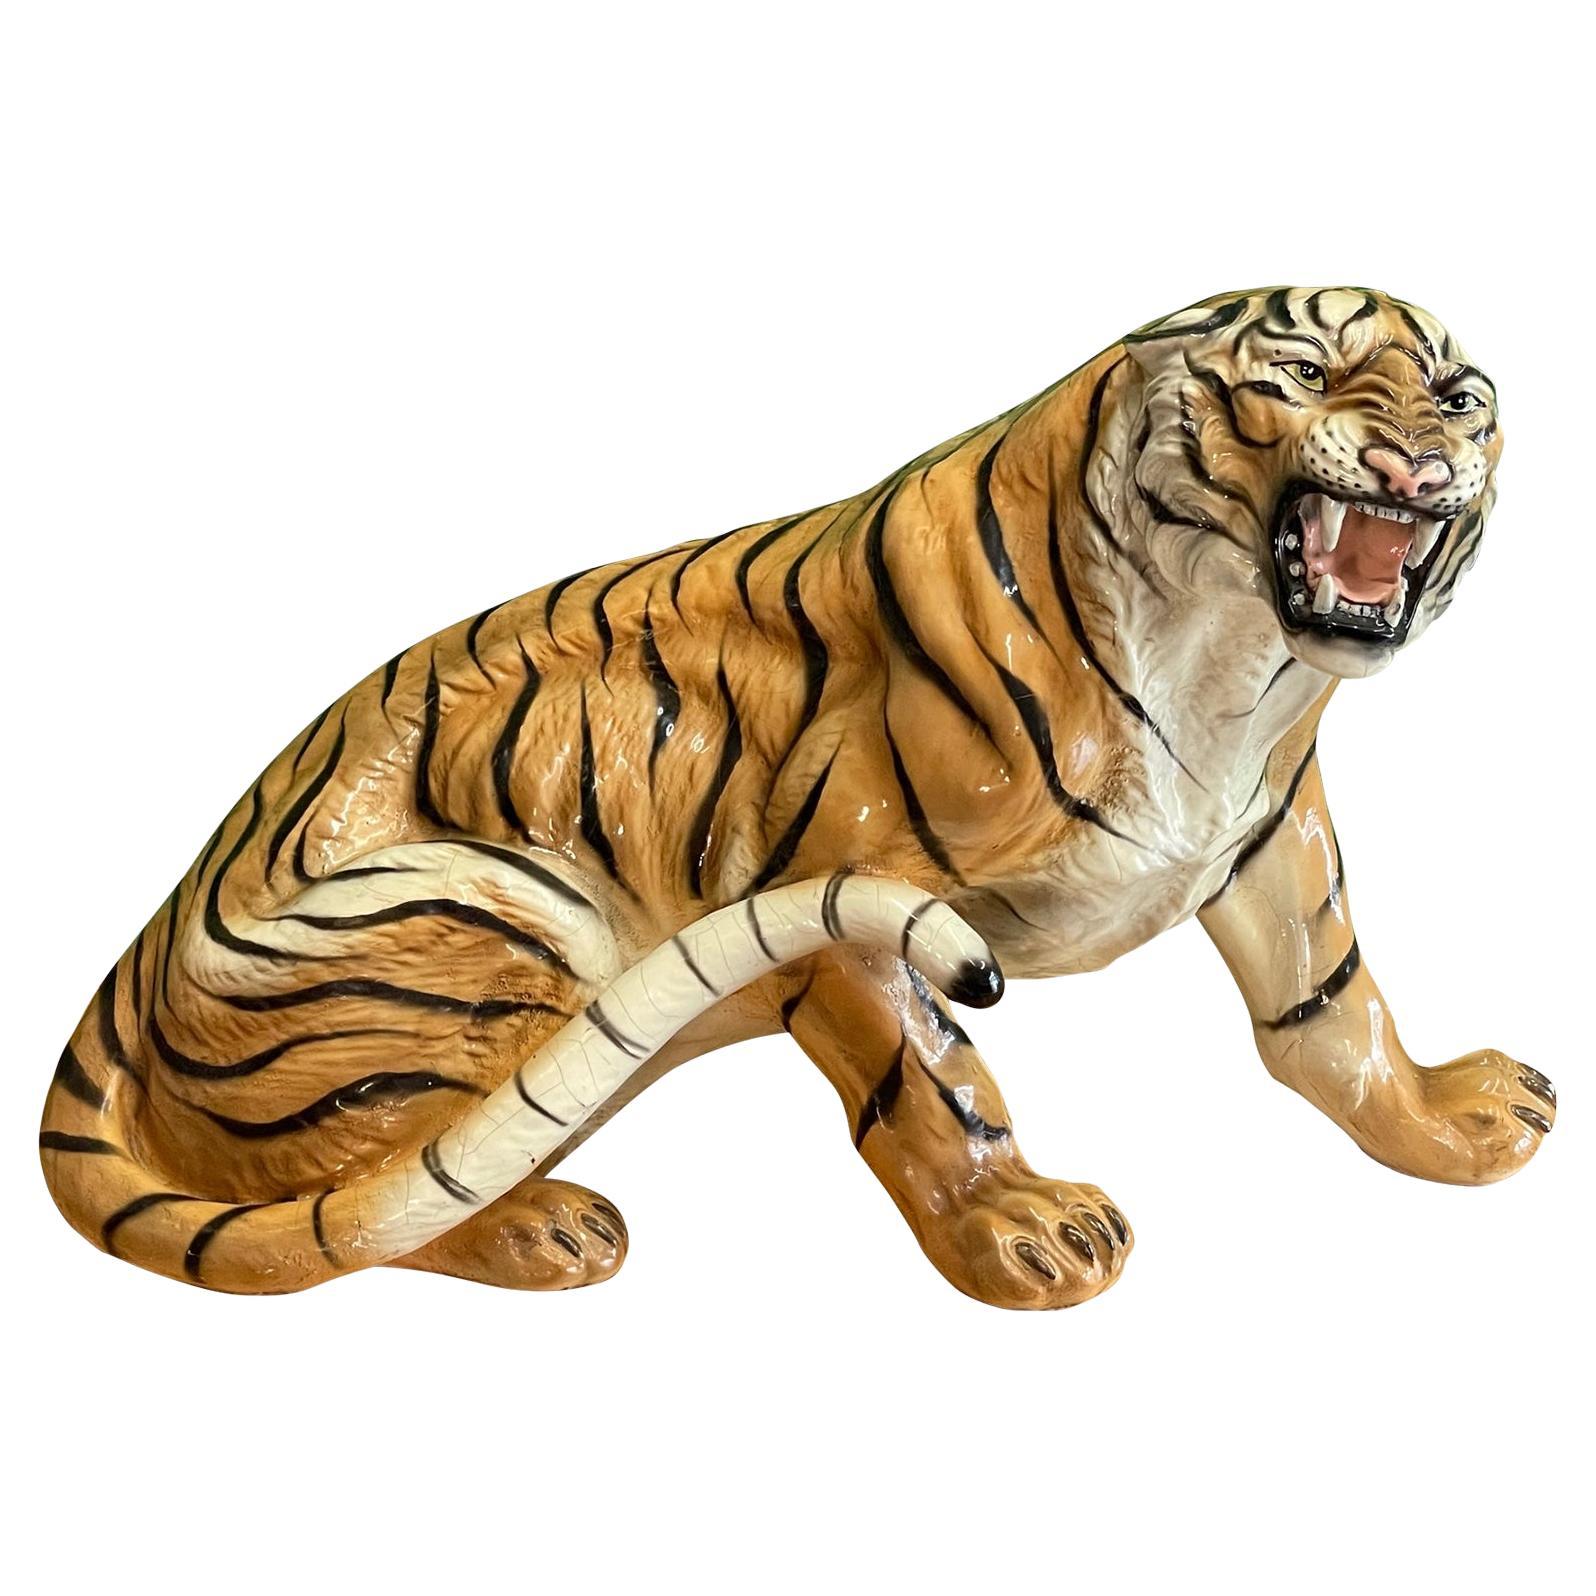 Große Tigerskulptur aus Terrakotta mit bedrohlicher Haltung und hell glasierter Oberfläche. Guter Zustand mit altersbedingten Mängeln, einschließlich einiger Haarrisse, die jedoch die strukturelle Integrität des Stücks nicht beeinträchtigen. Siehe